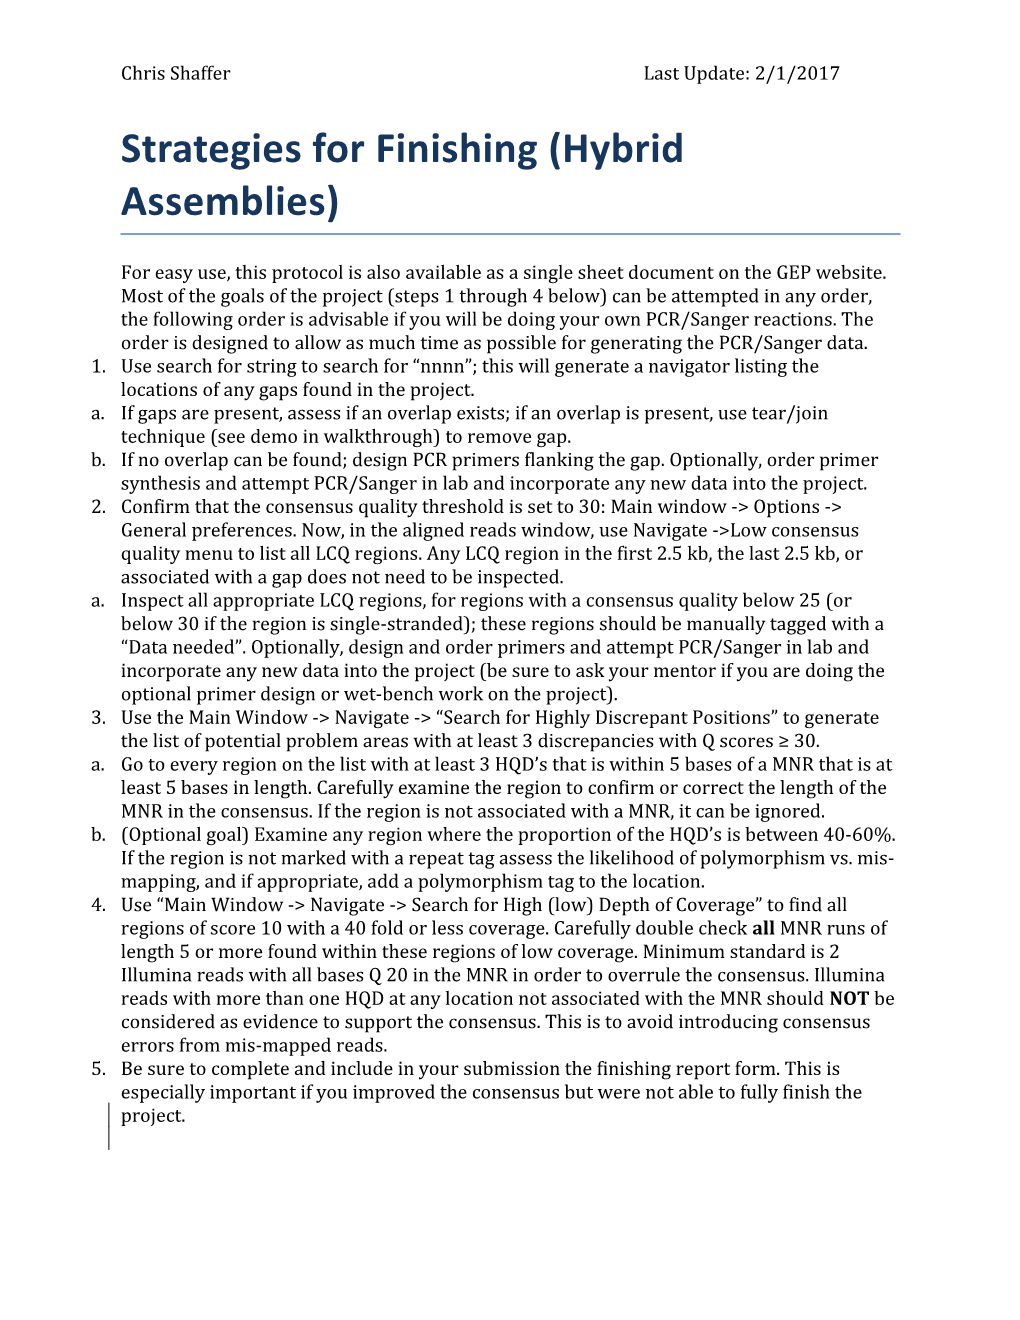 Strategies for Finishing (Hybrid Assemblies)